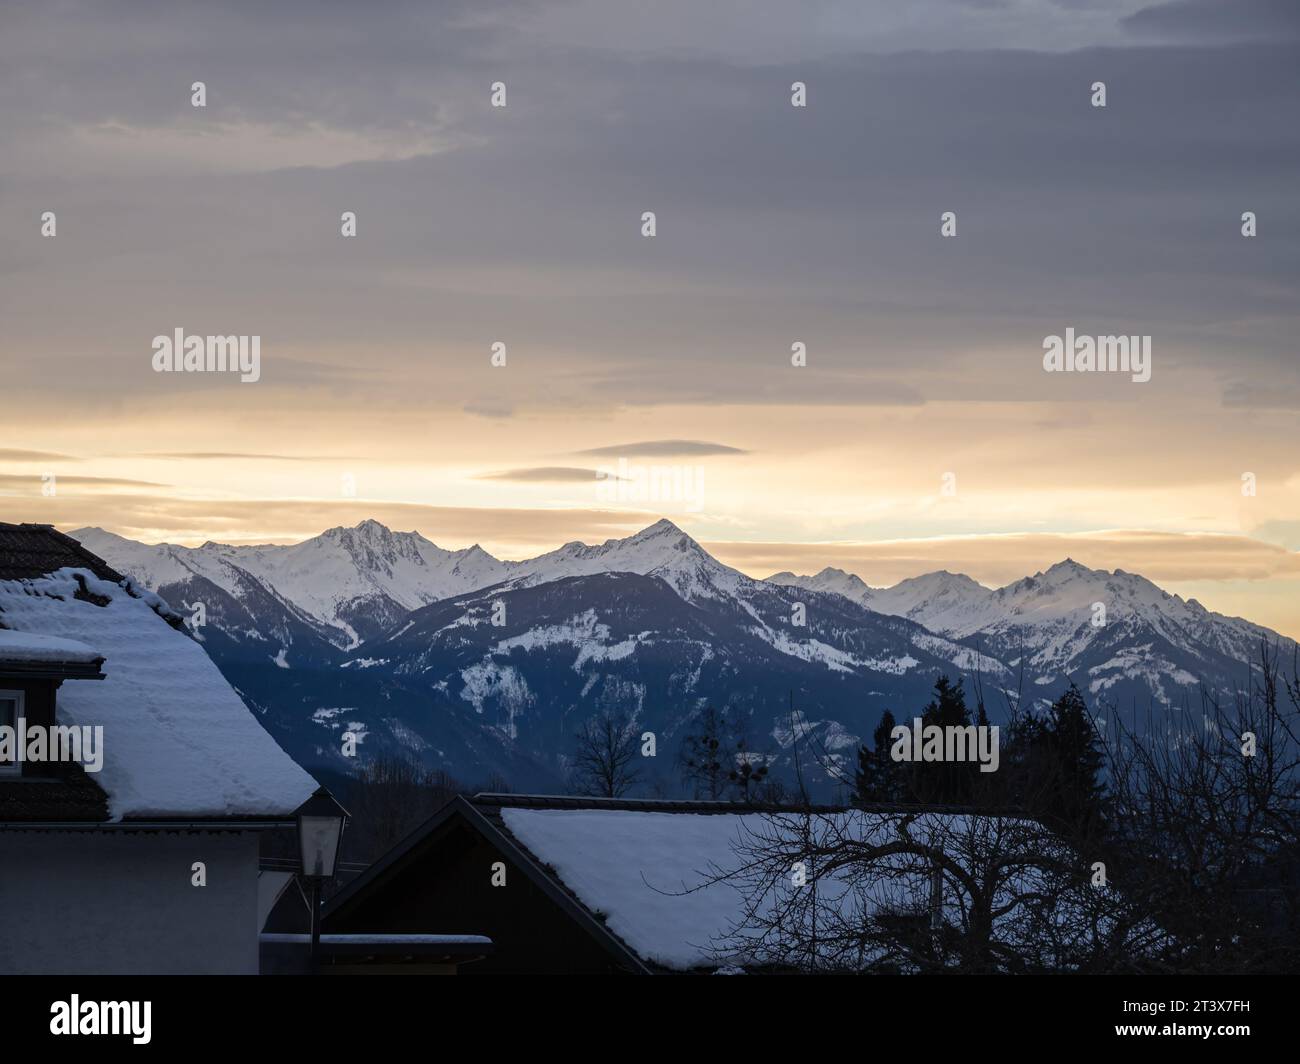 Puesta de sol colorida de la nieve del invierno sobre un pueblo de los alpes austriacos con las montañas en el fondo, tejados cubiertos de nieve, Carintia, Austria Foto de stock